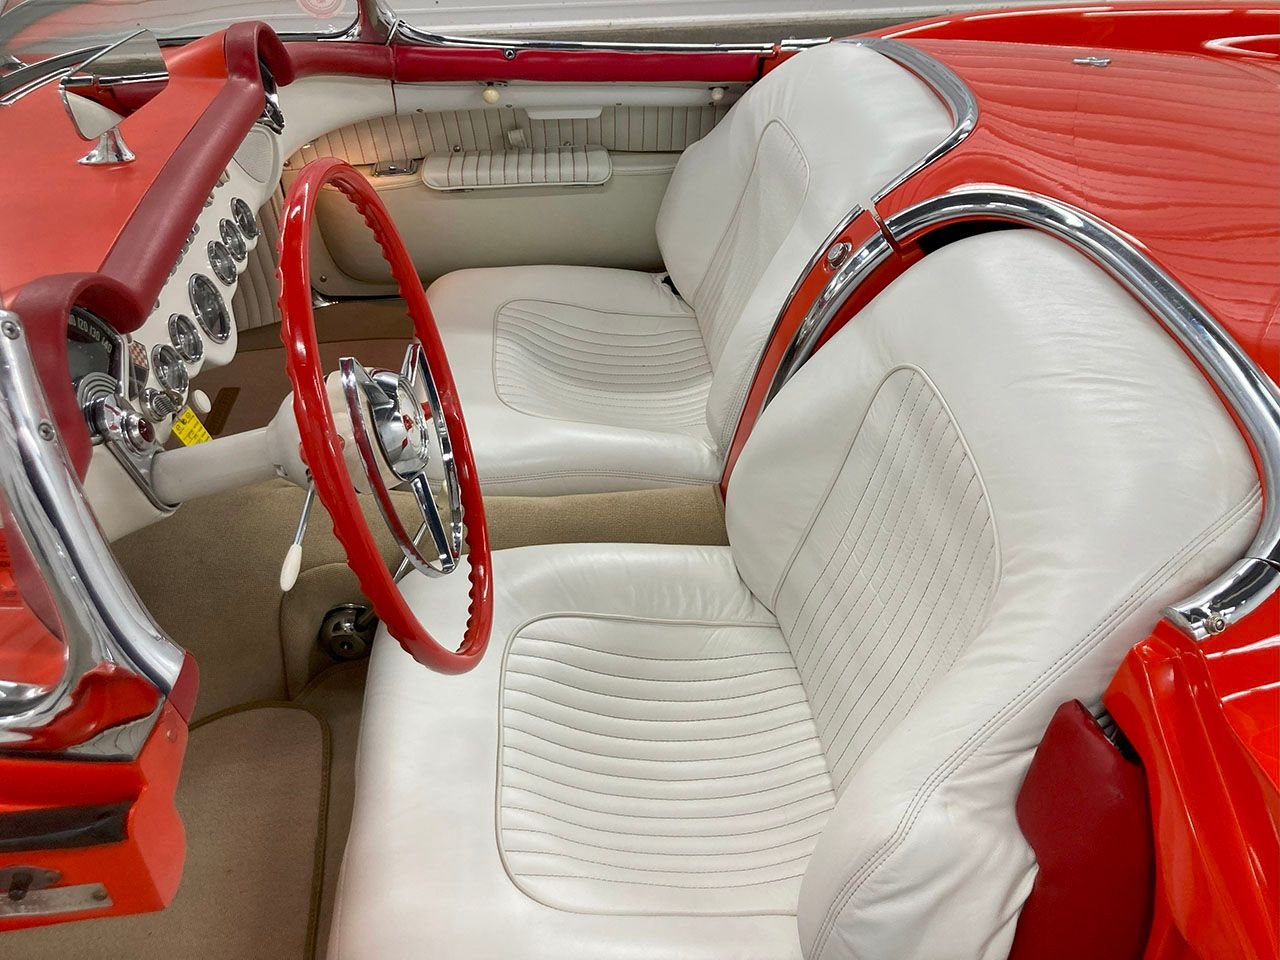 For Sale 1955 Chevrolet Corvette